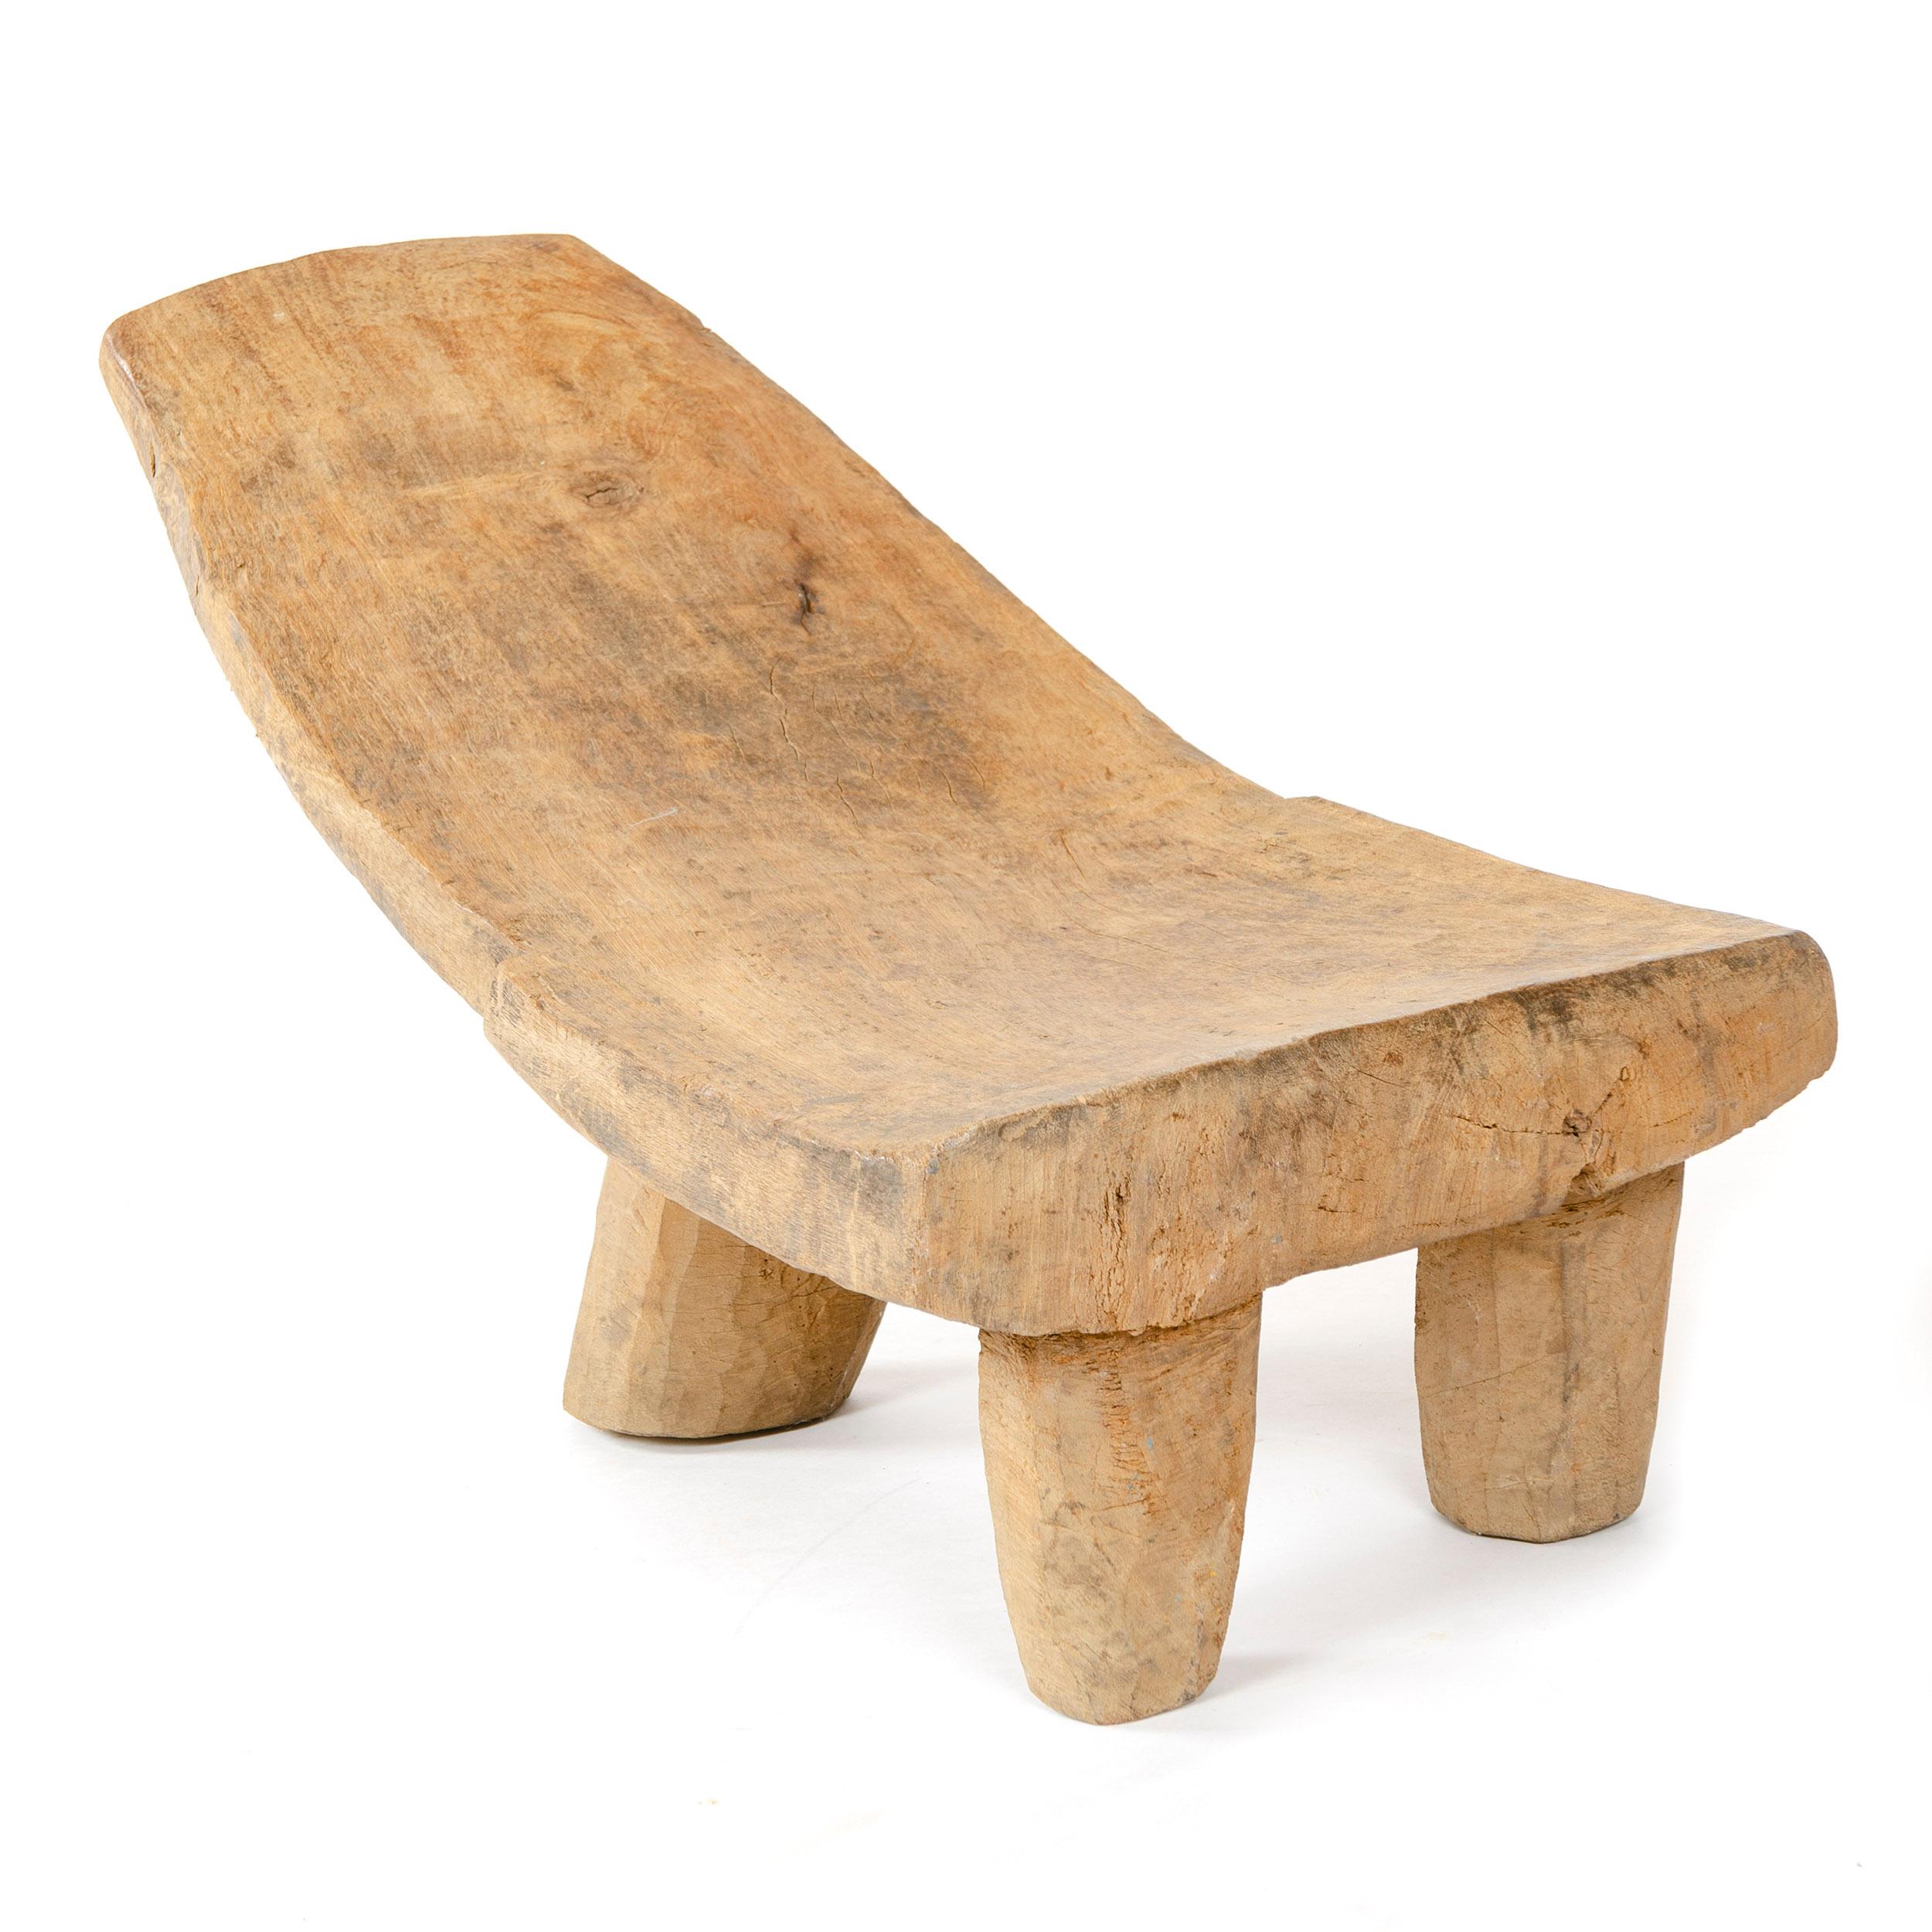 Une chaise africaine basse, sculptée dans une seule pièce de bois, ayant trois (3) pieds.